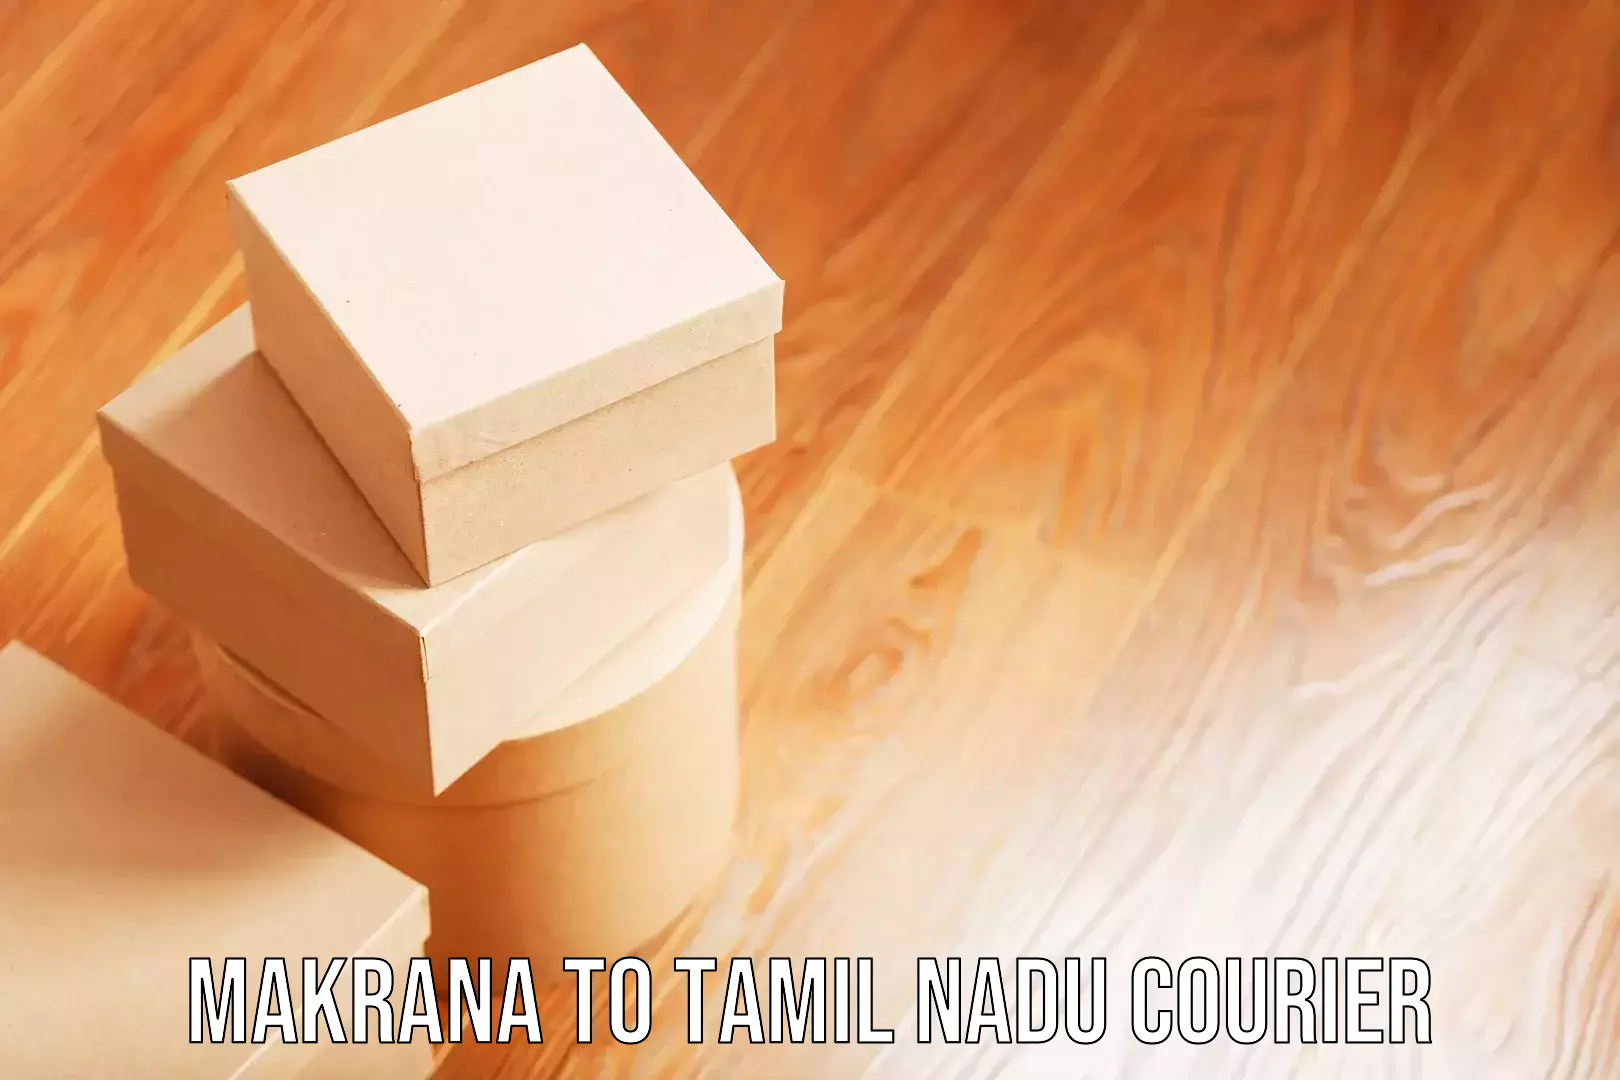 Door-to-door baggage service Makrana to Tamil Nadu